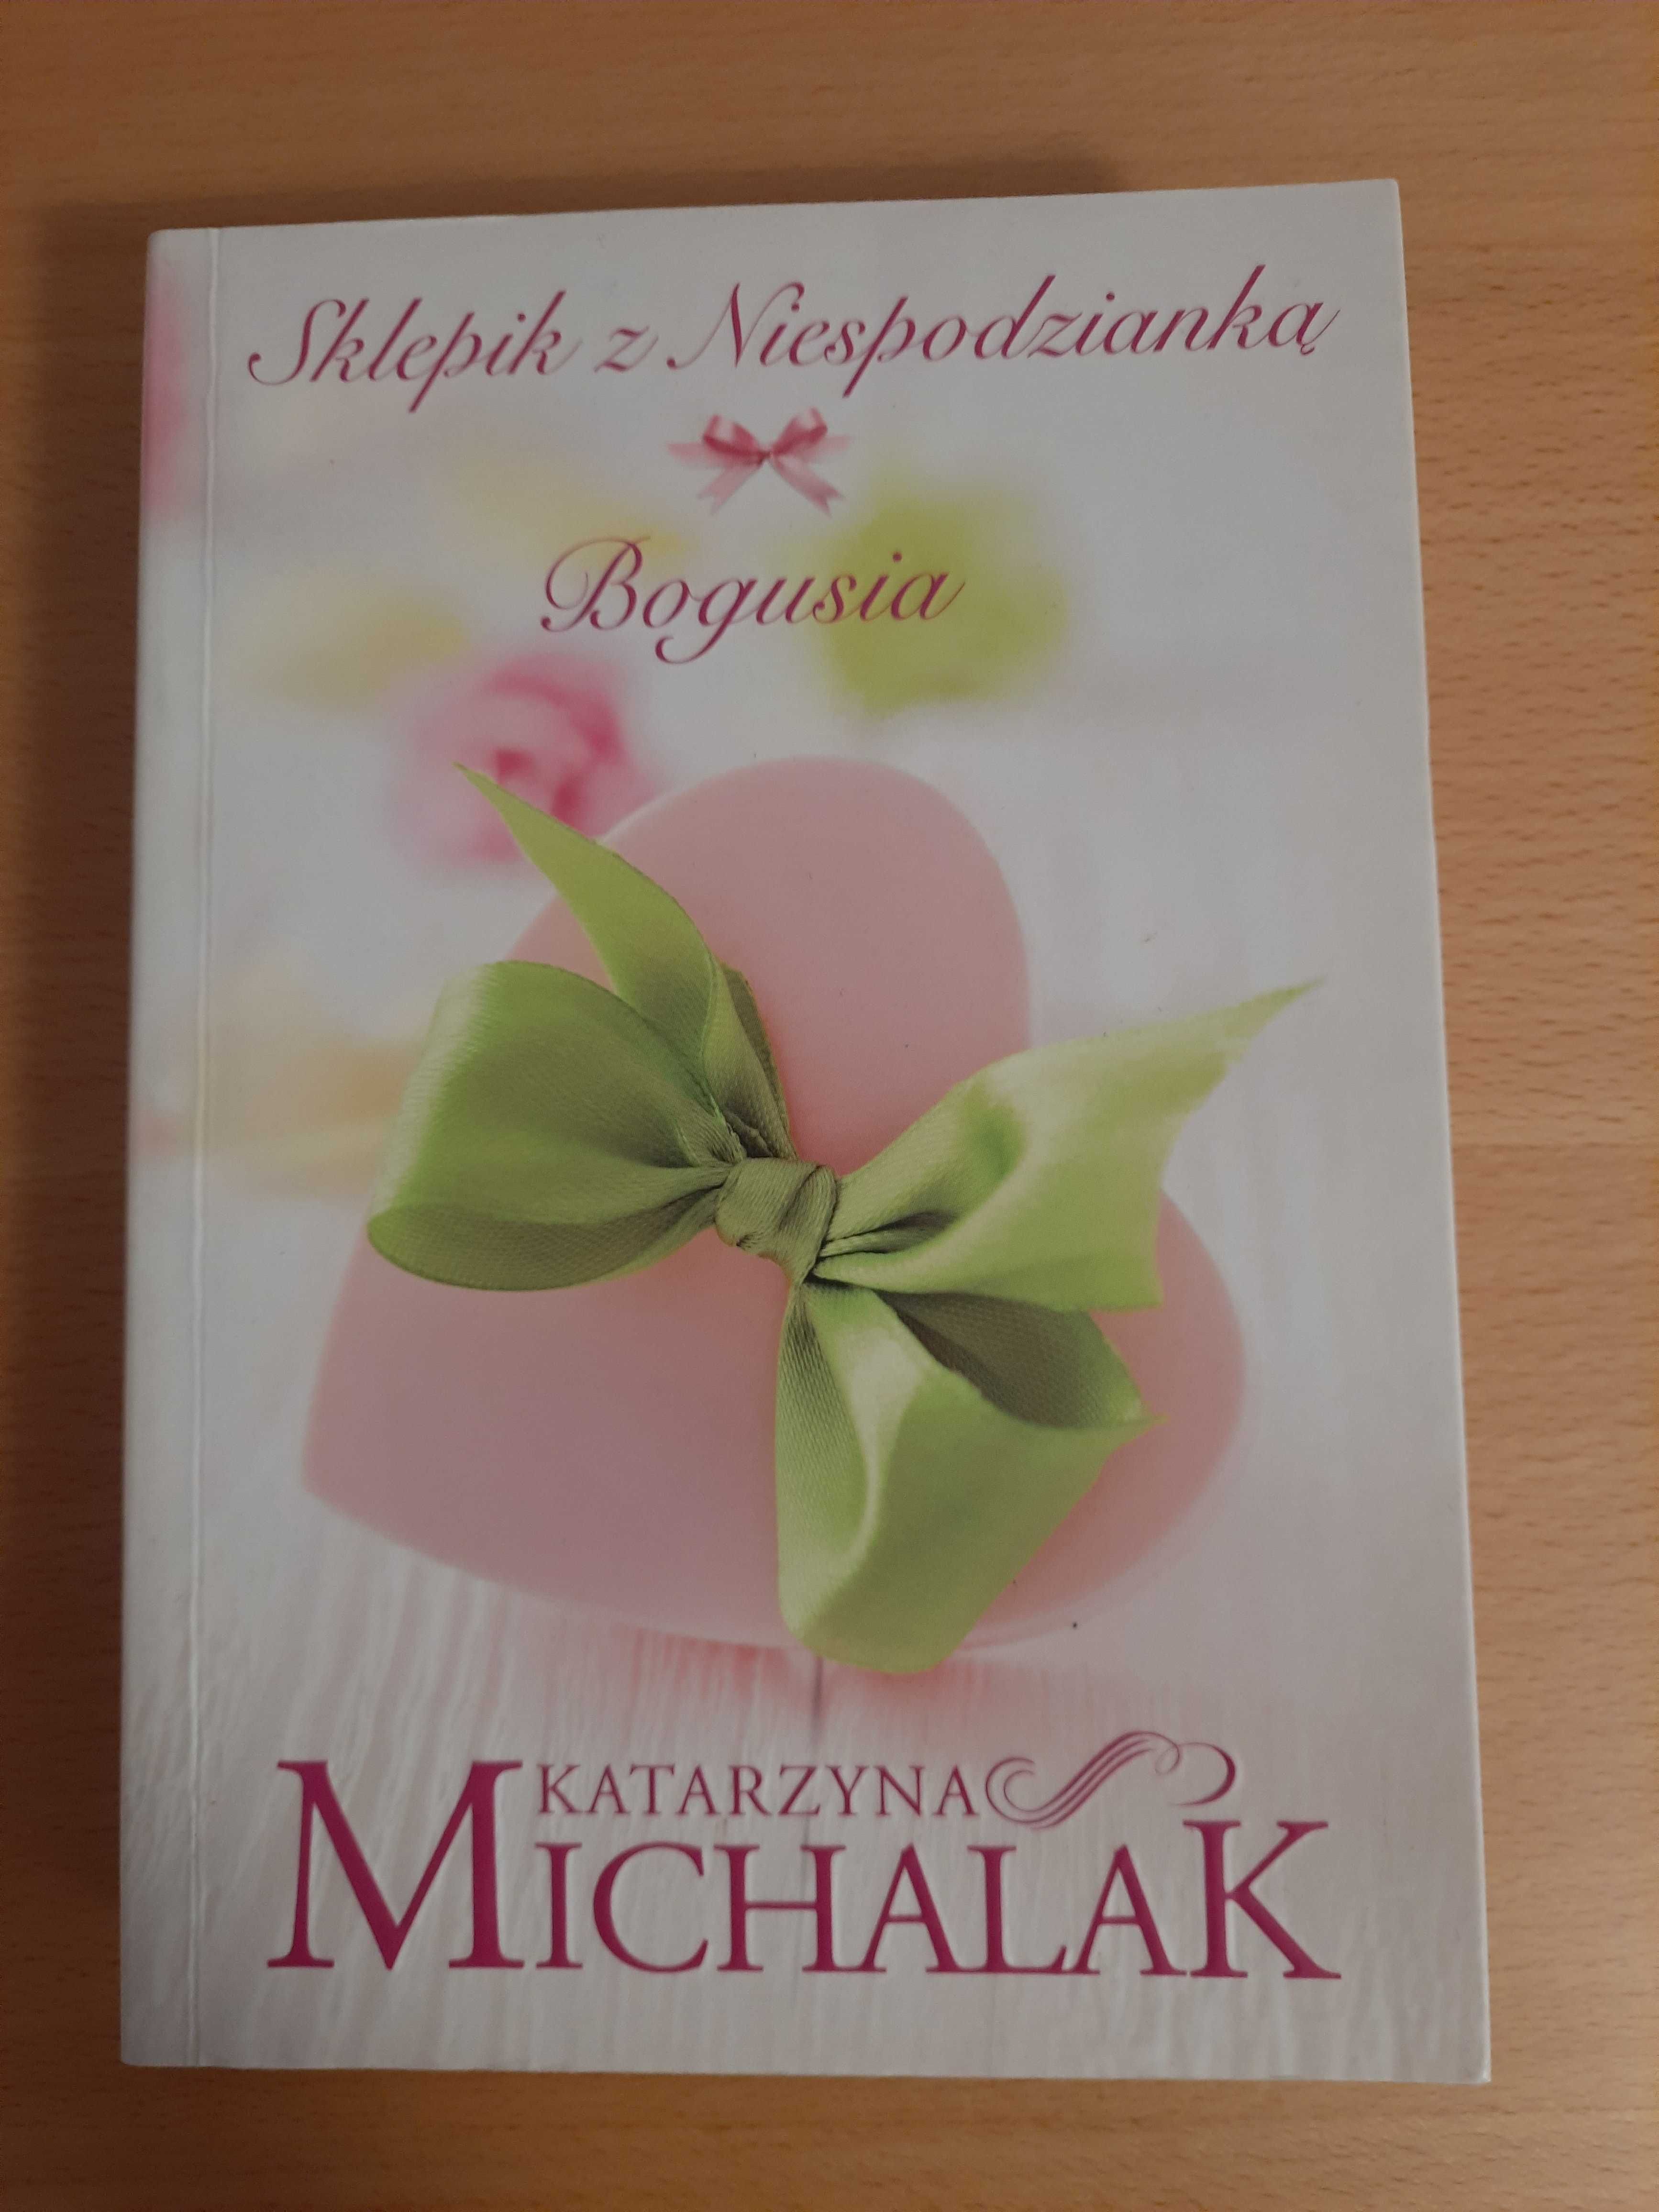 Sprzedam książkę "Sklepik z niespodzianką" K. Michalak.